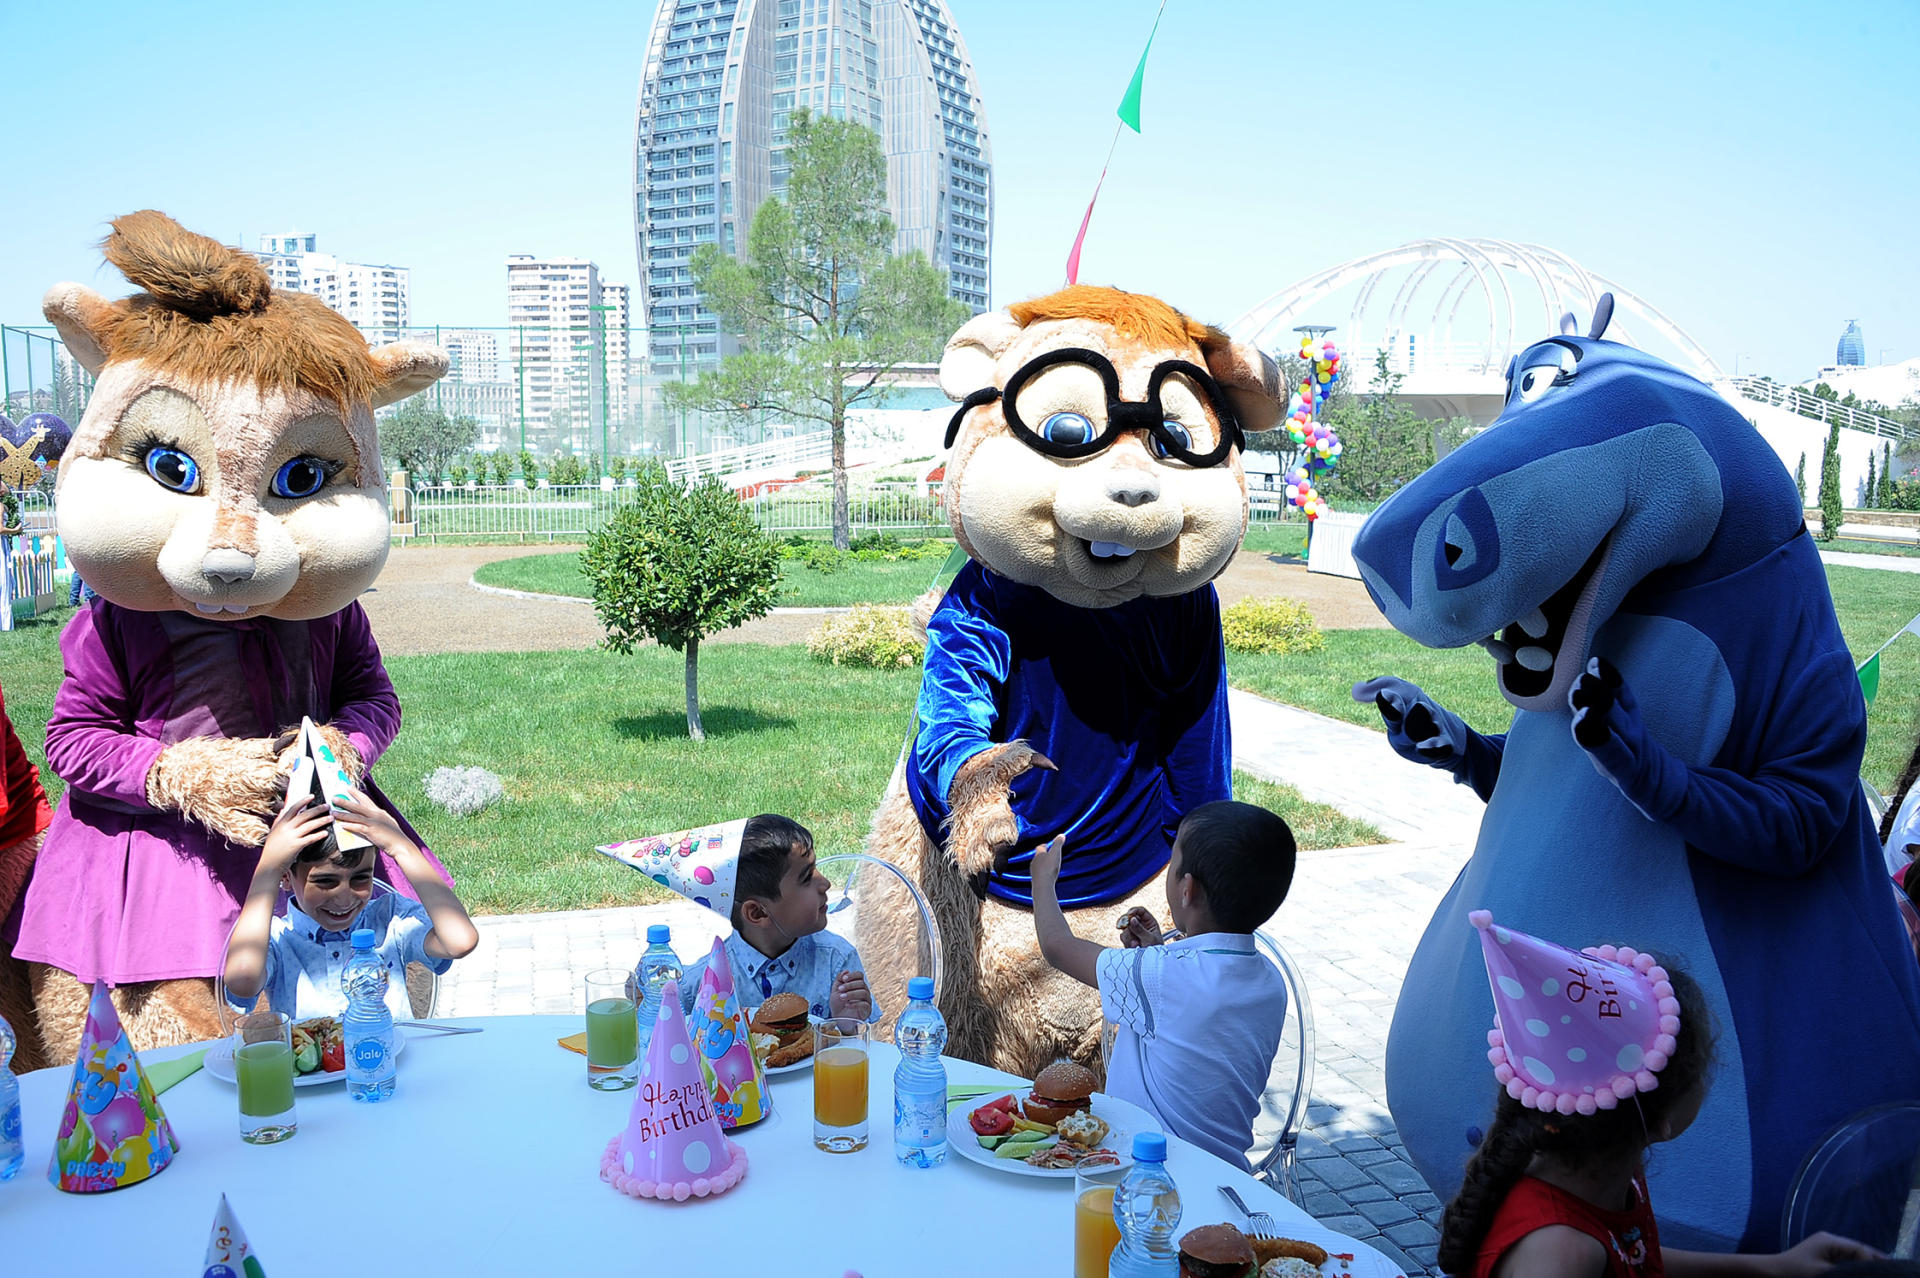 При поддержке Фонда Гейдара Алиева организовано очередное празднество для детей (ФОТО, ВИДЕО)